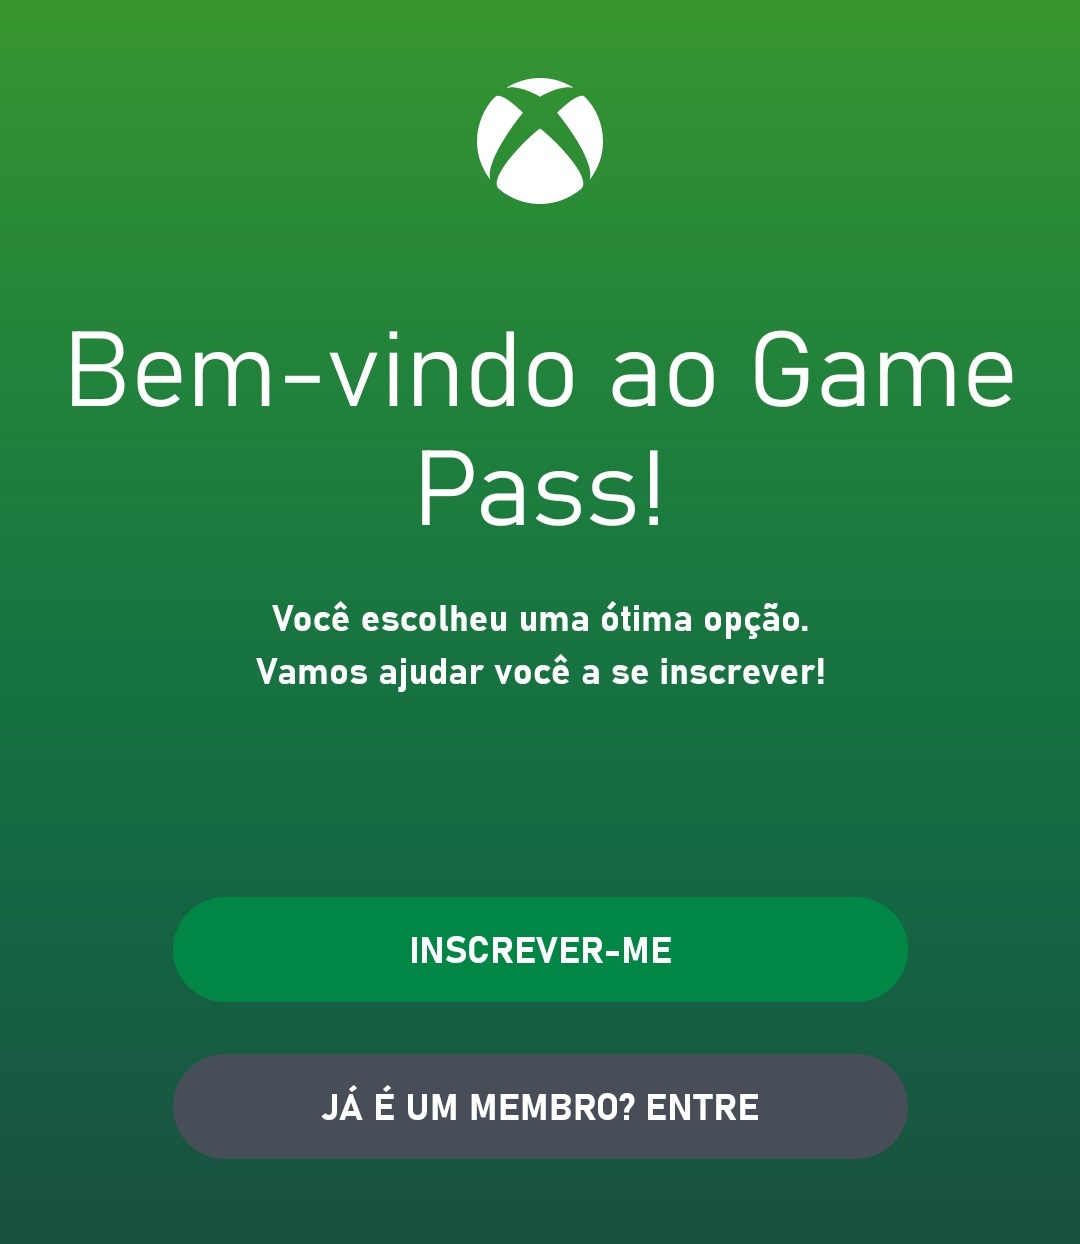 É preciso ser assinantes do serviço Xbox Game Pass Ultimate para poder jogar o game no seu celular